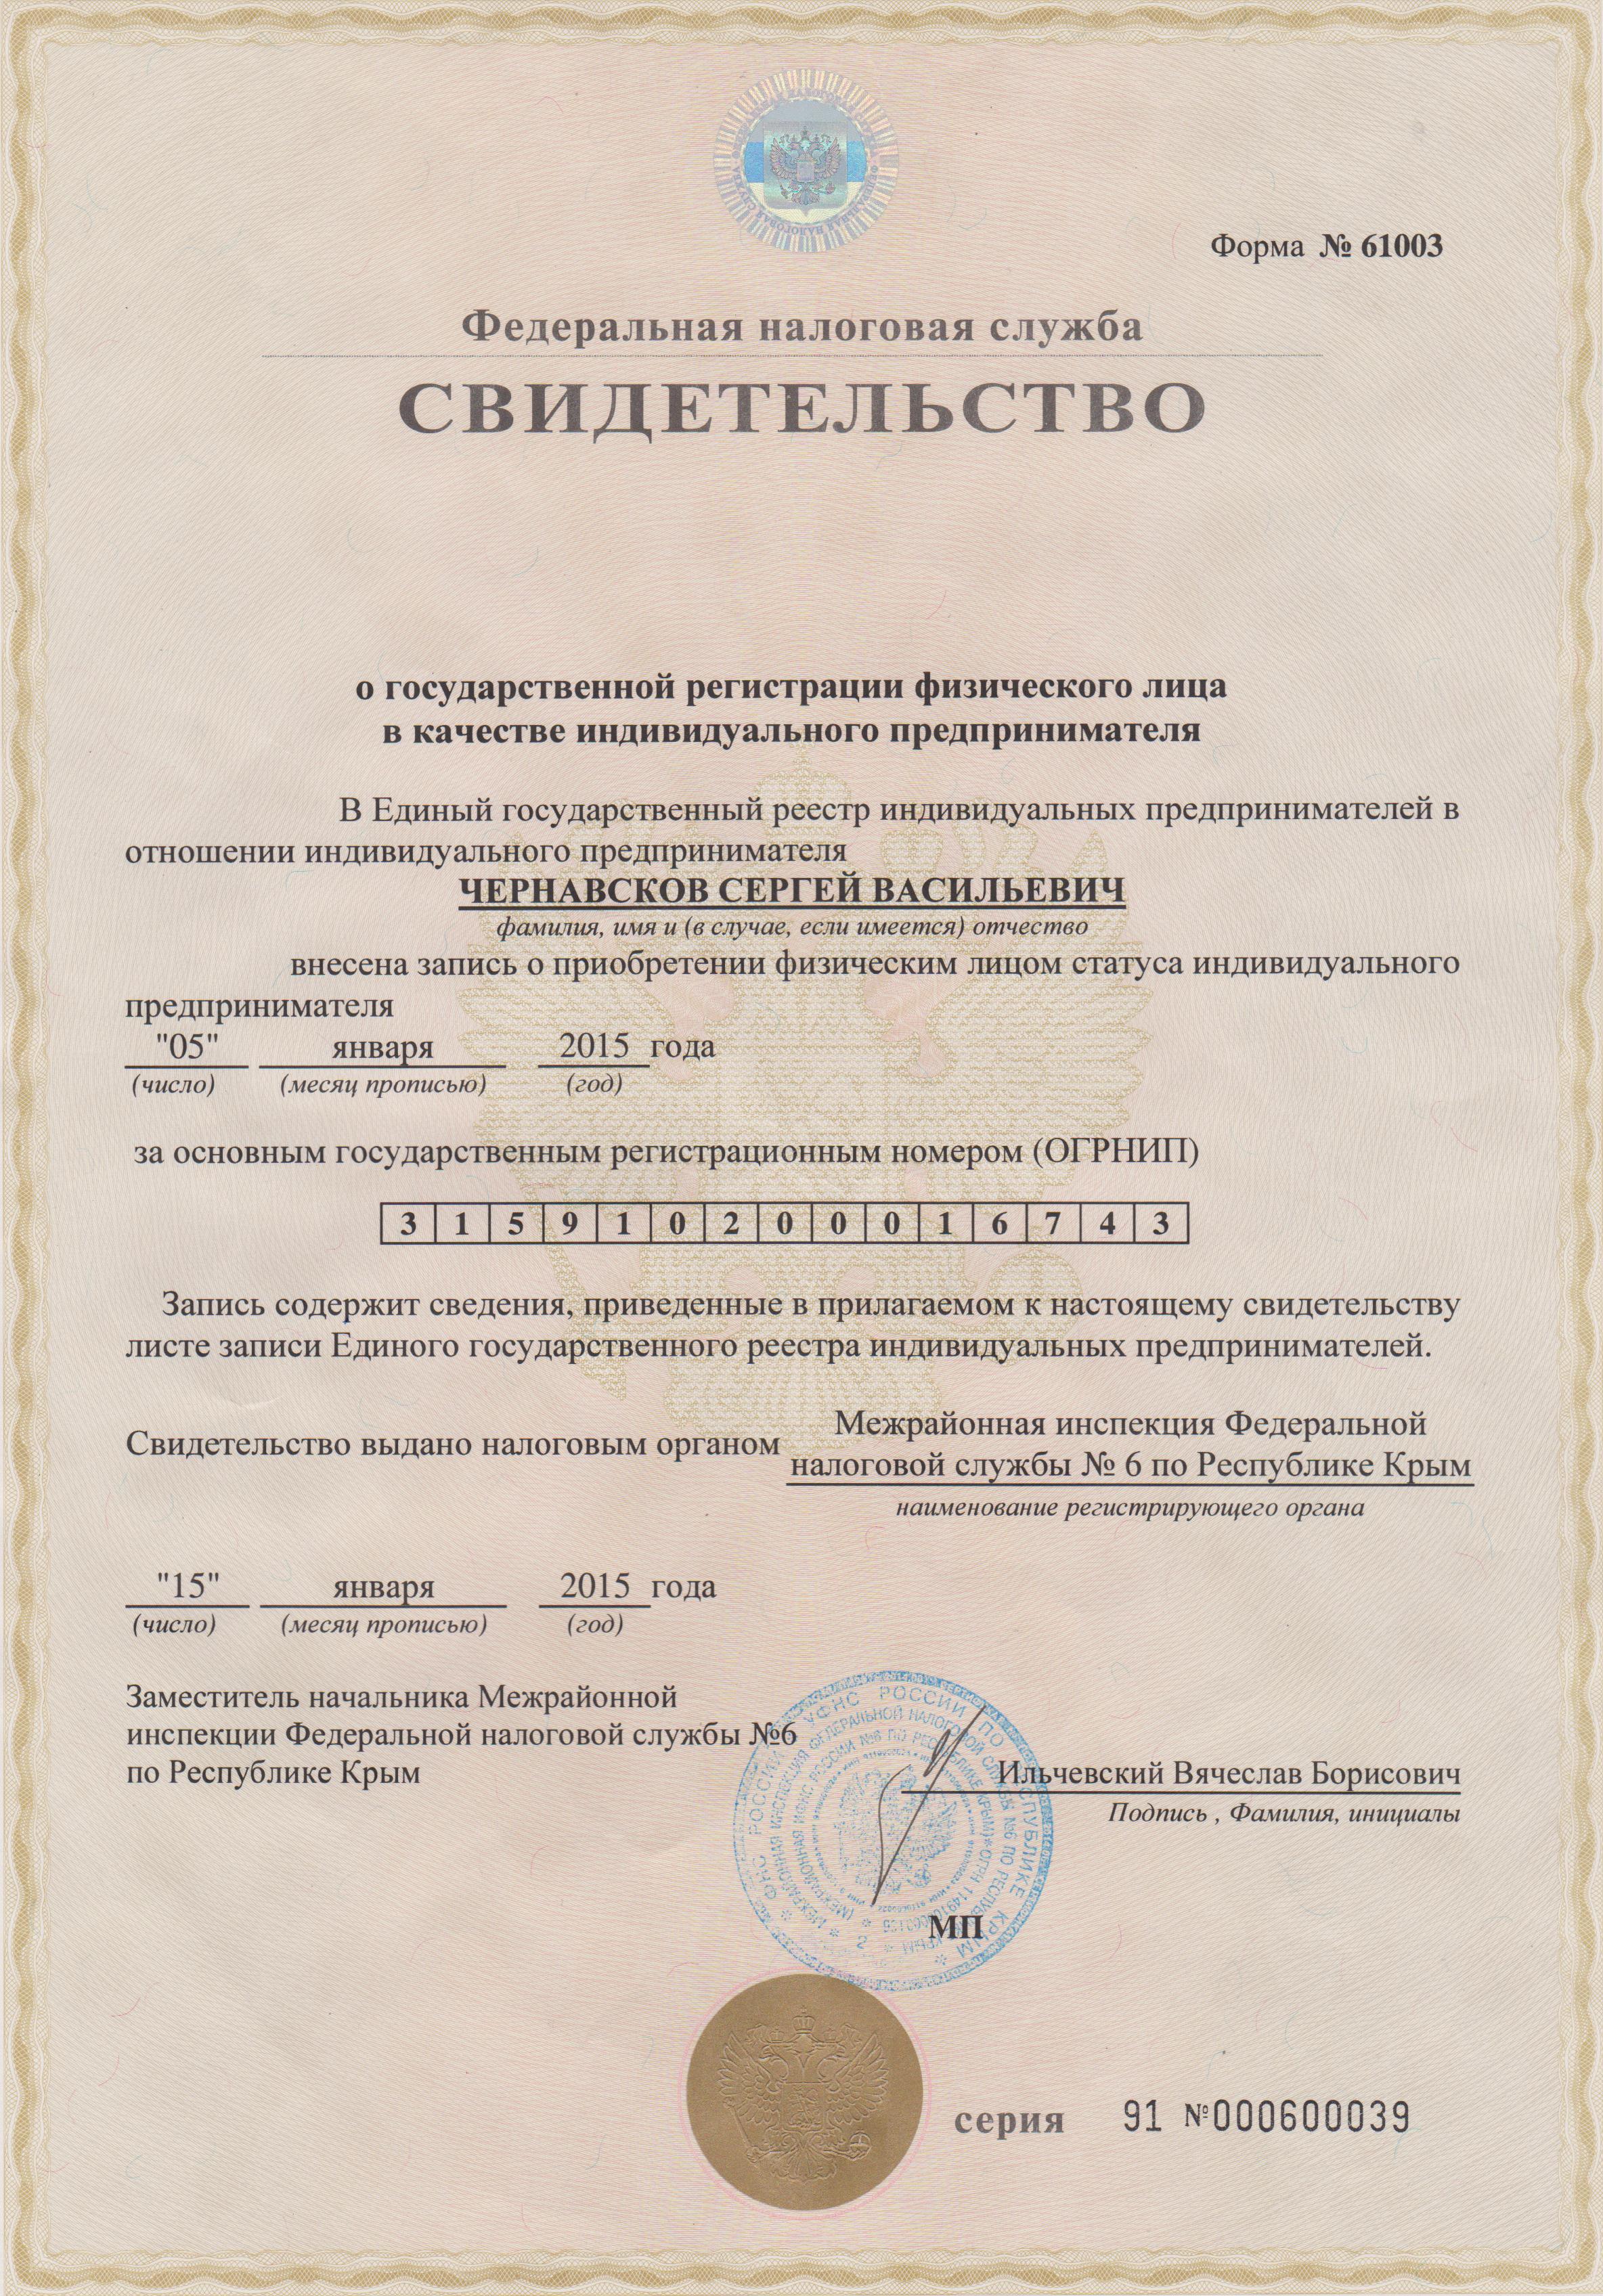 Скан документа о регистрации в России